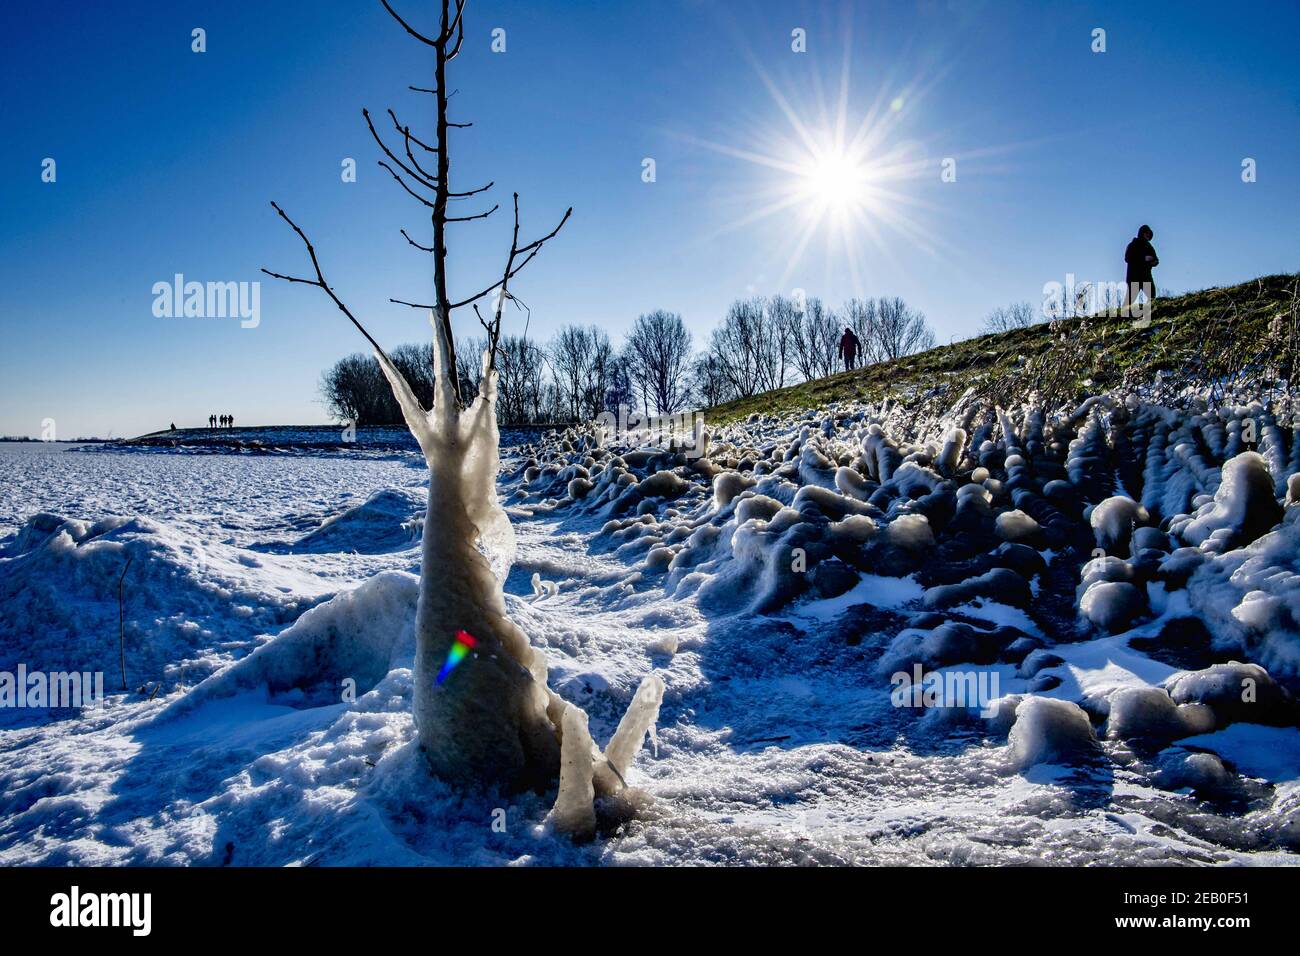 Il lago Gouwzee è congelato. Le persone pattinano su ghiaccio naturale nonostante i rischi. Monikkendam, Paesi Bassi il 11 febbraio 2021. Foto di Robin Utrecht/ABACAPRESS.COM Foto Stock